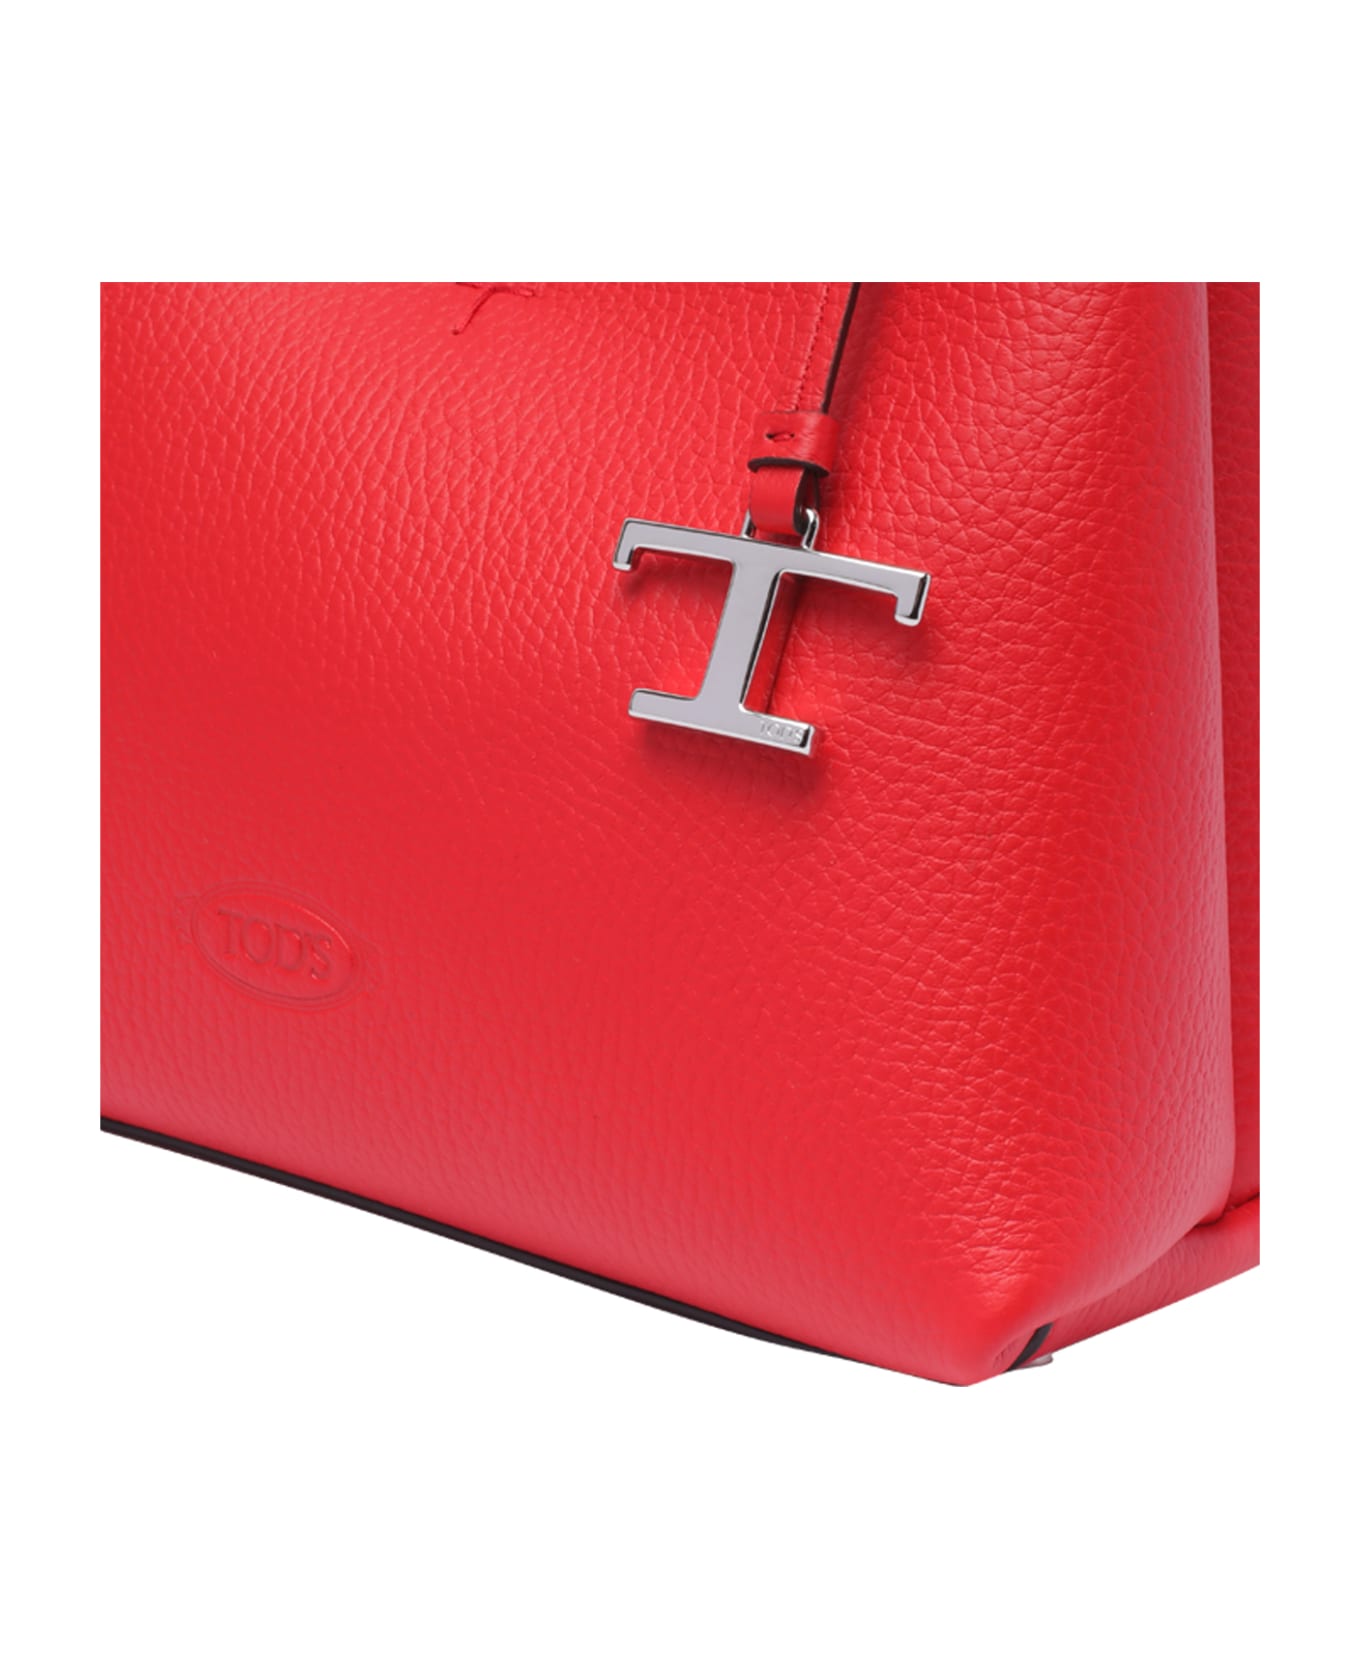 Tod's Florida Handbag - Red トートバッグ